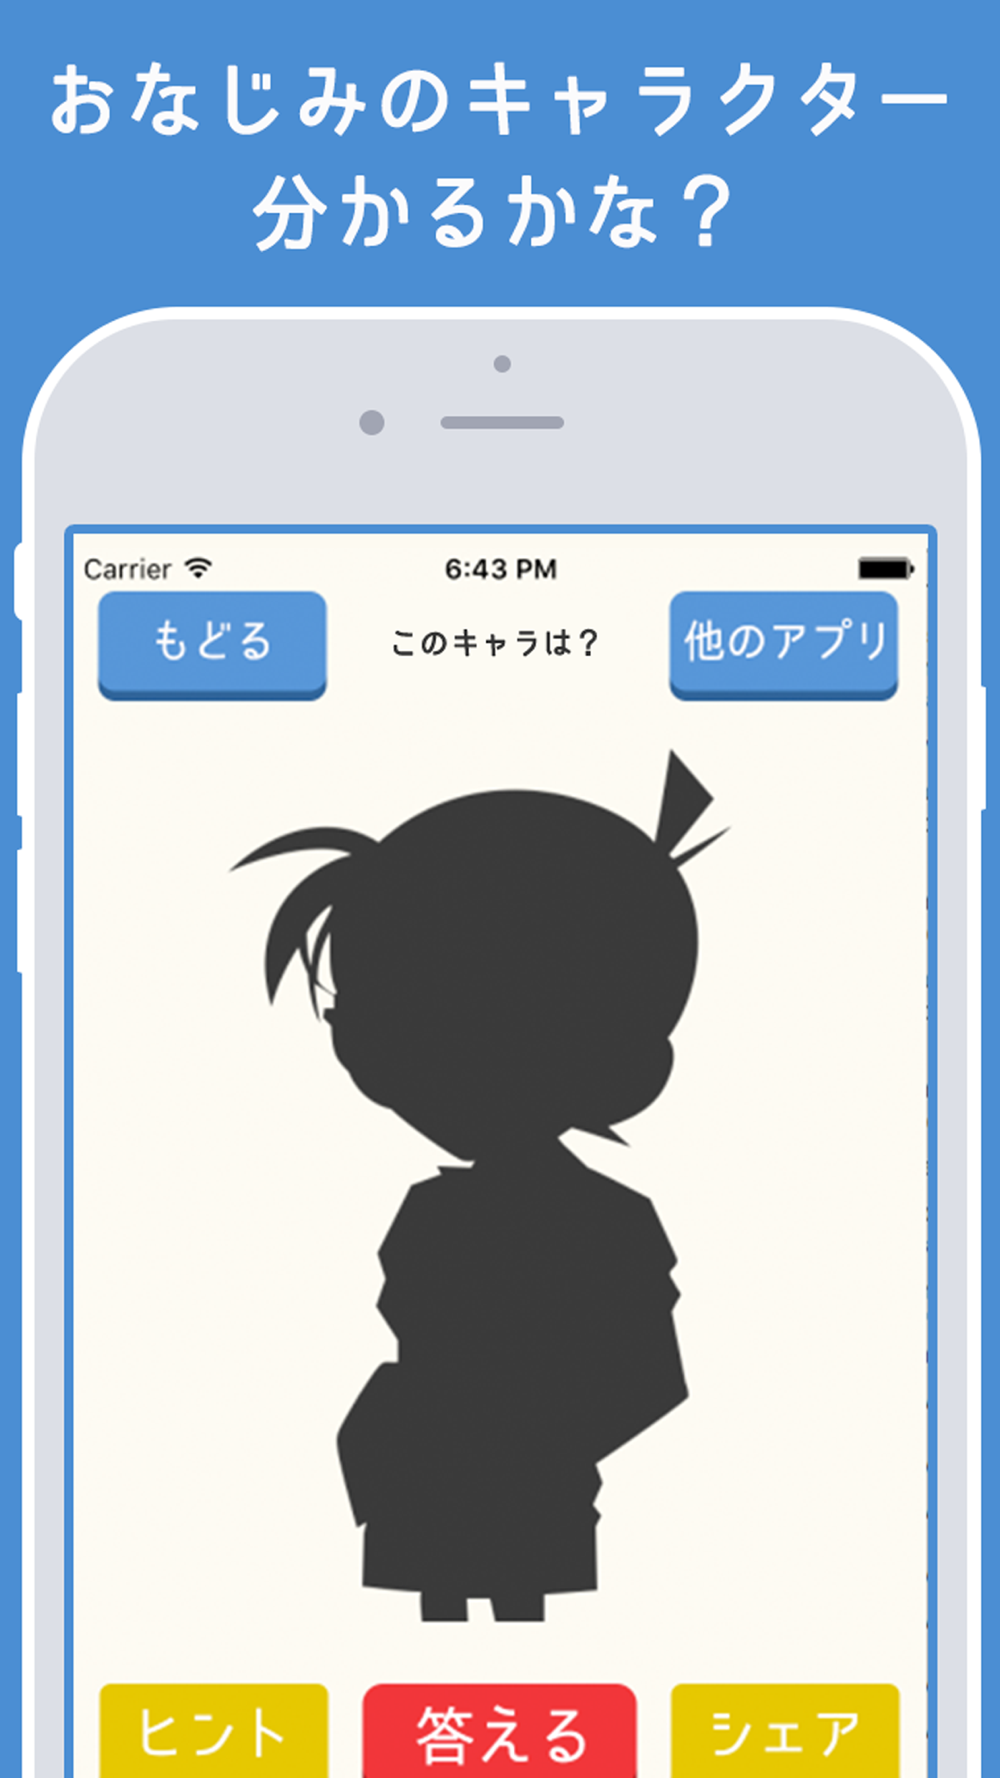 シルエットクイズ 人気マンガ 映画アニメキャラ 芸能人で暇つぶし脳トレ Free Download App For Iphone Steprimo Com